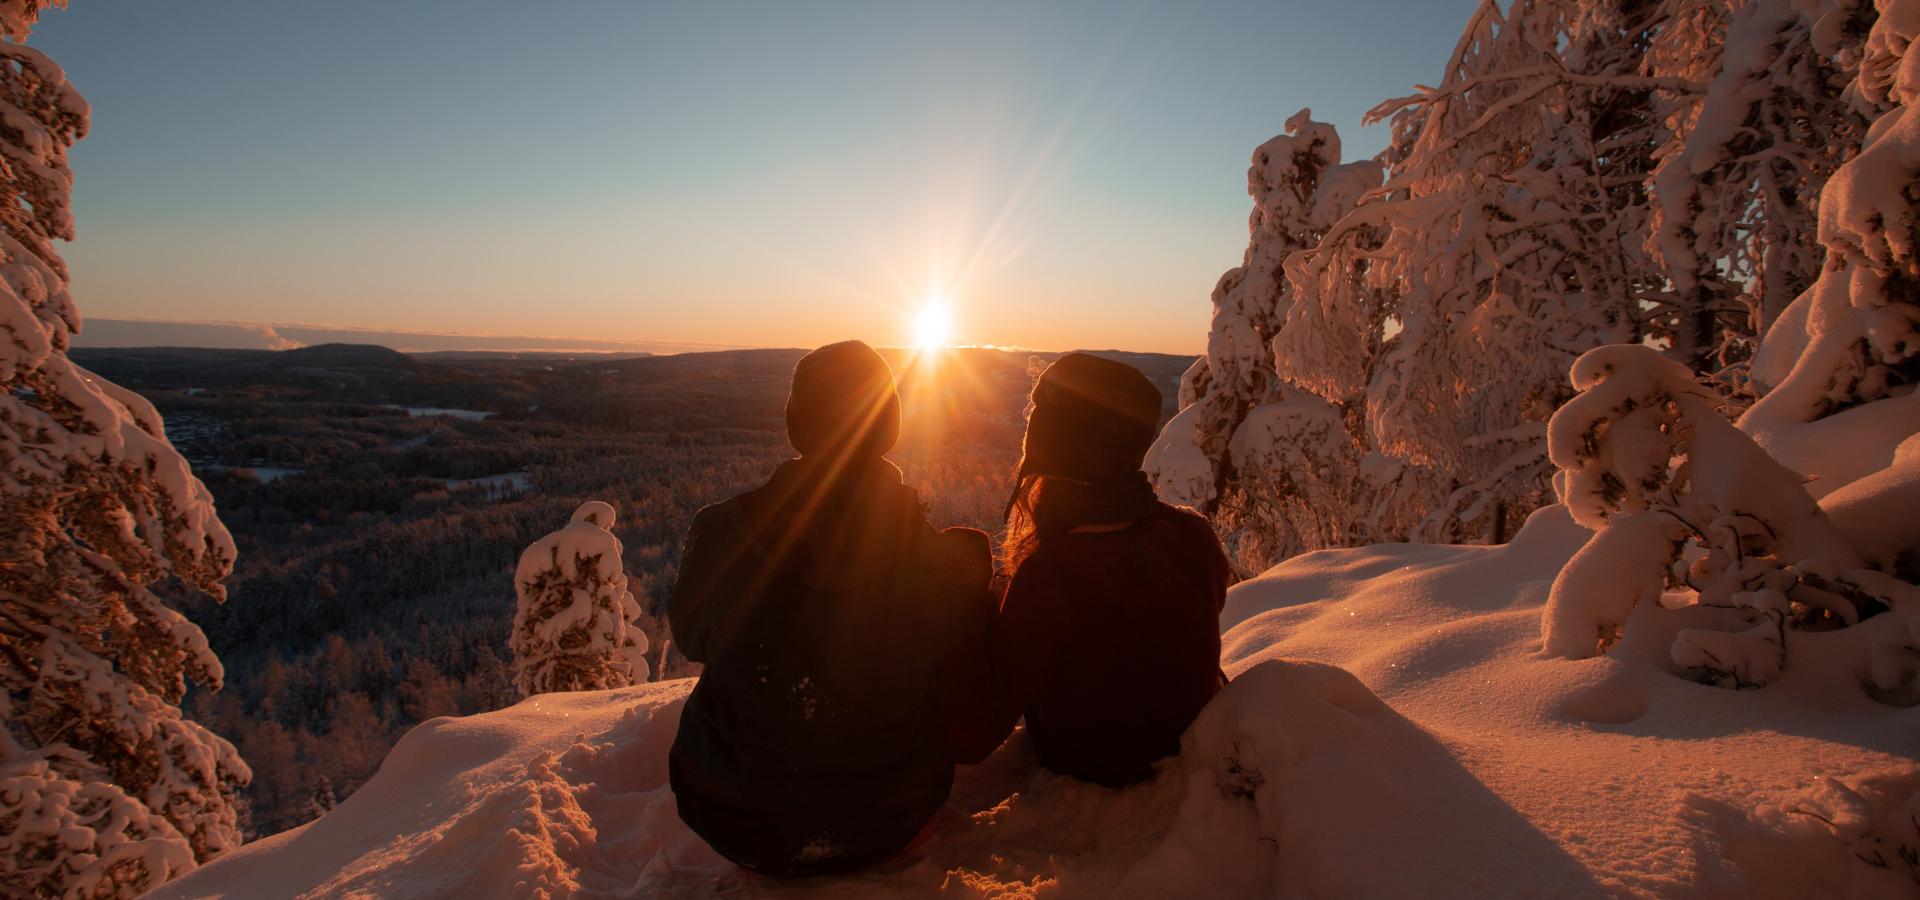 Ett par sitter i snön och ser ut över solnedgången.